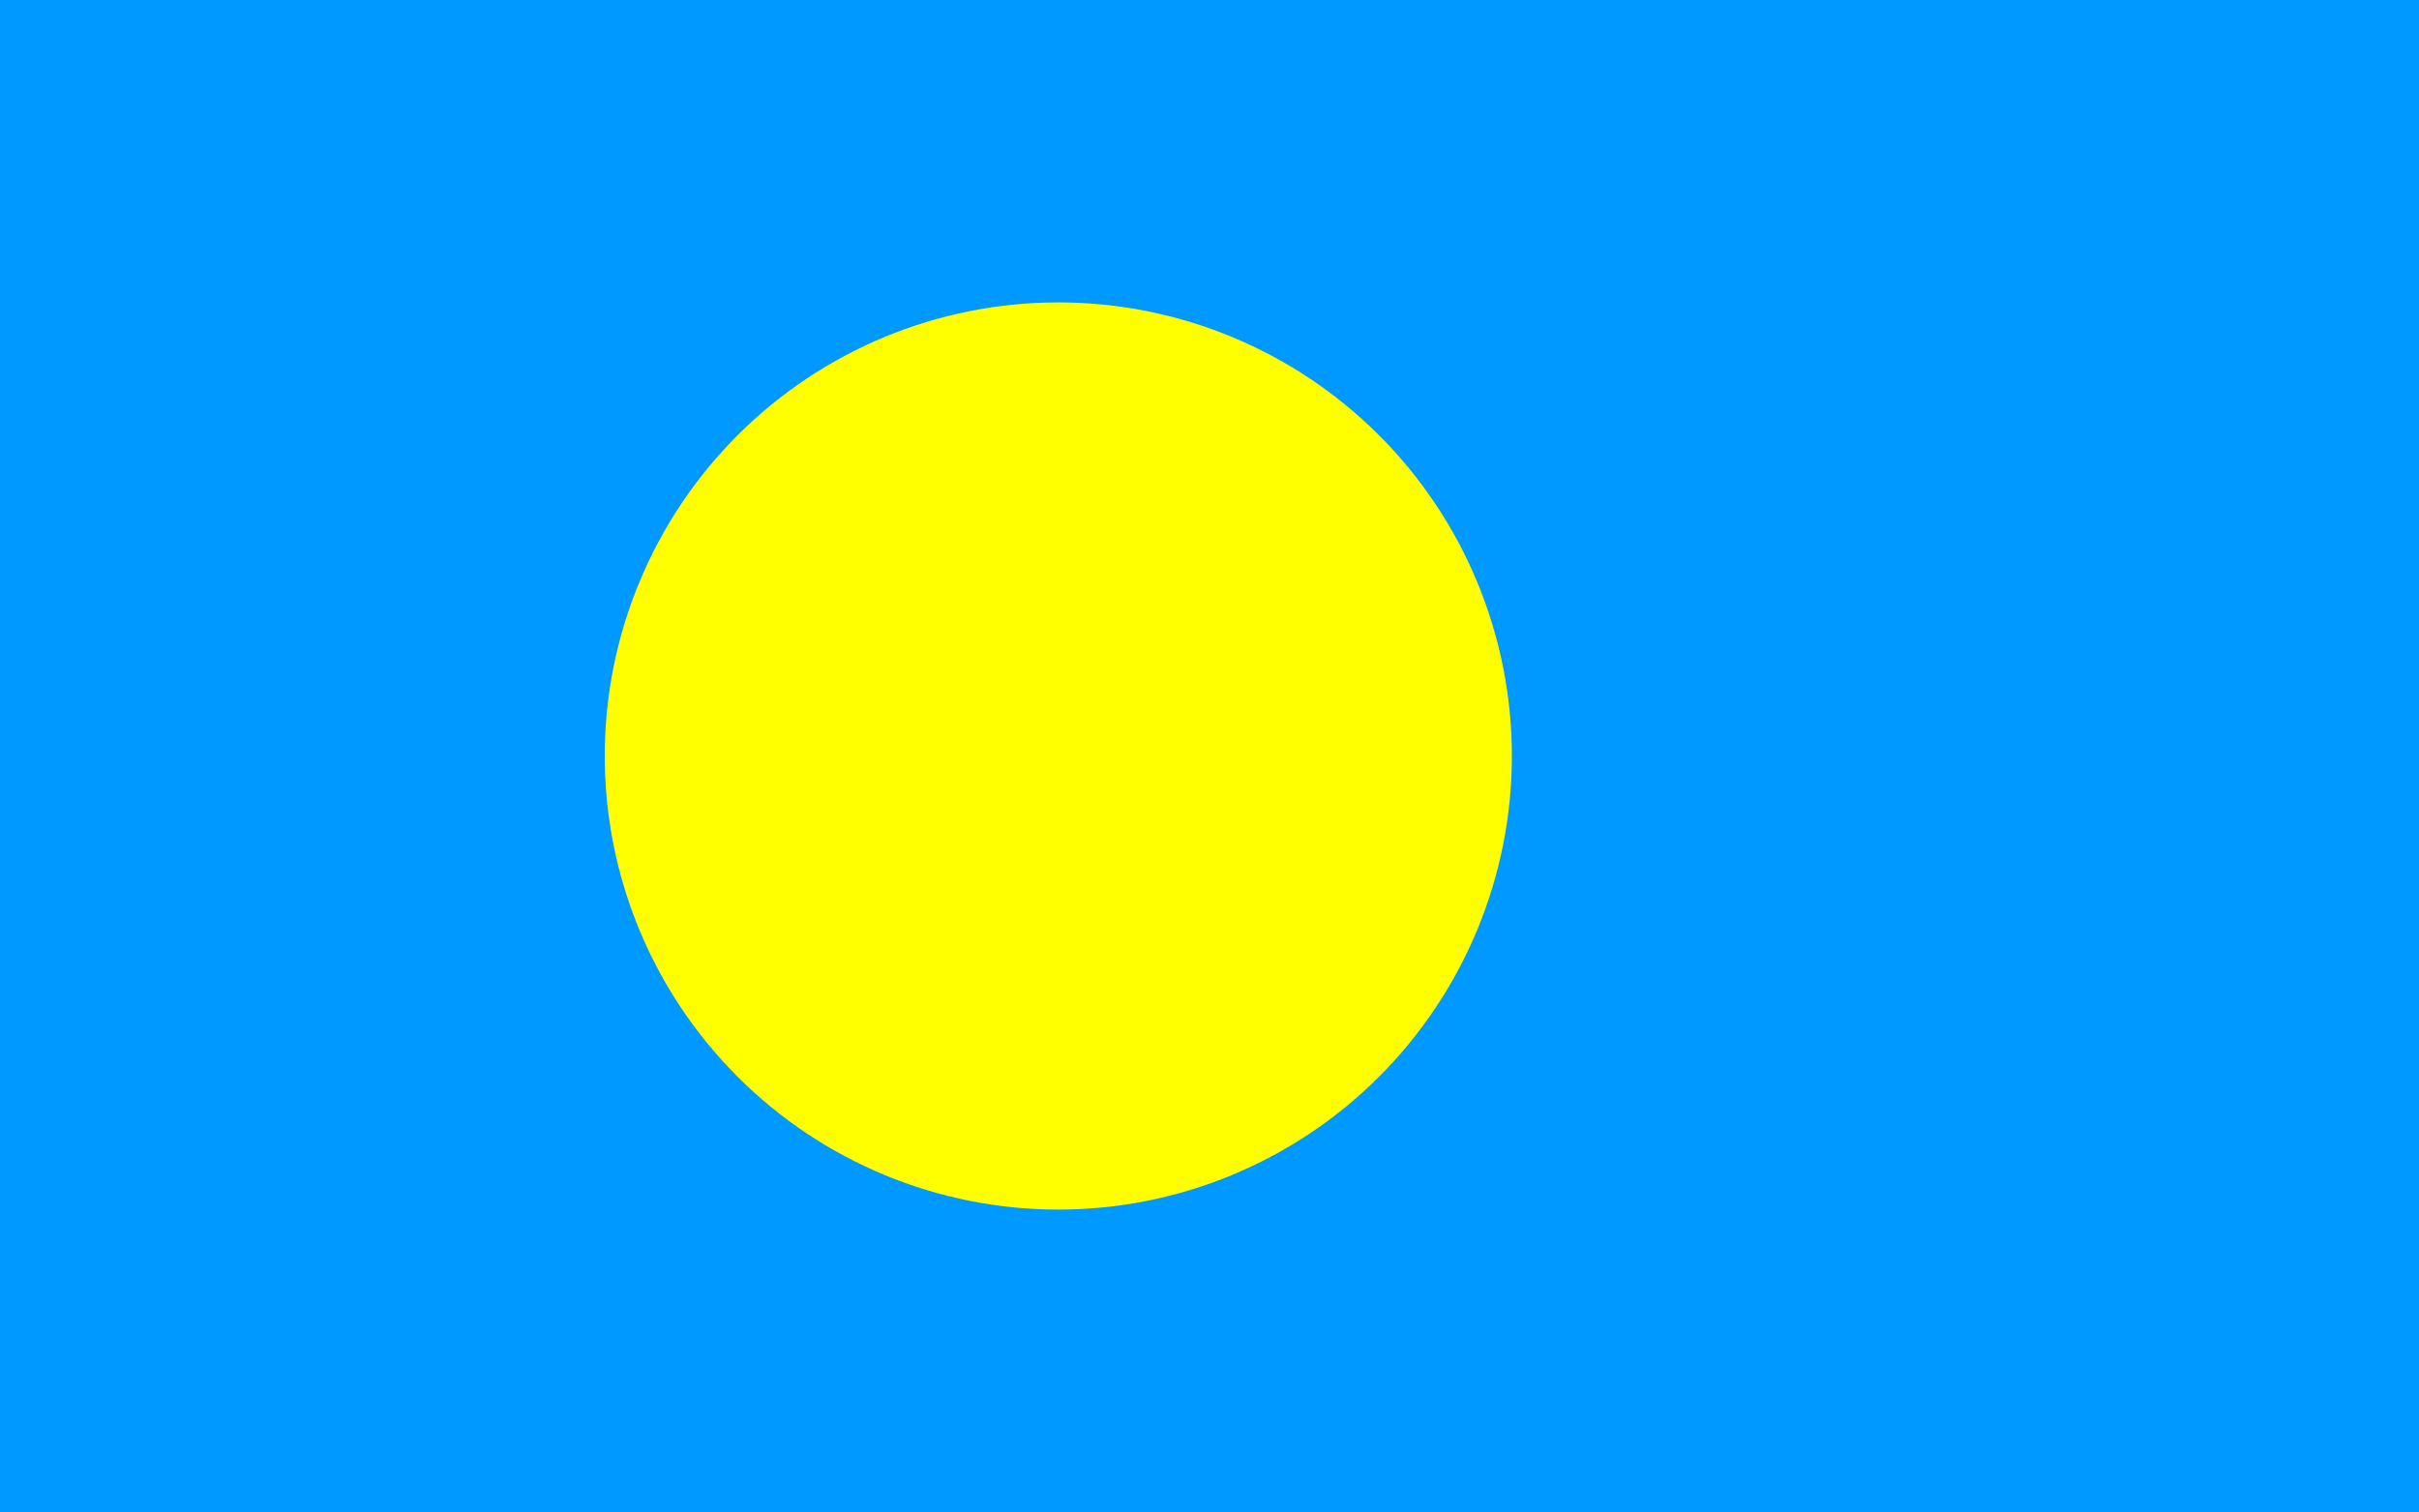 Palau Flag Image - Free Download